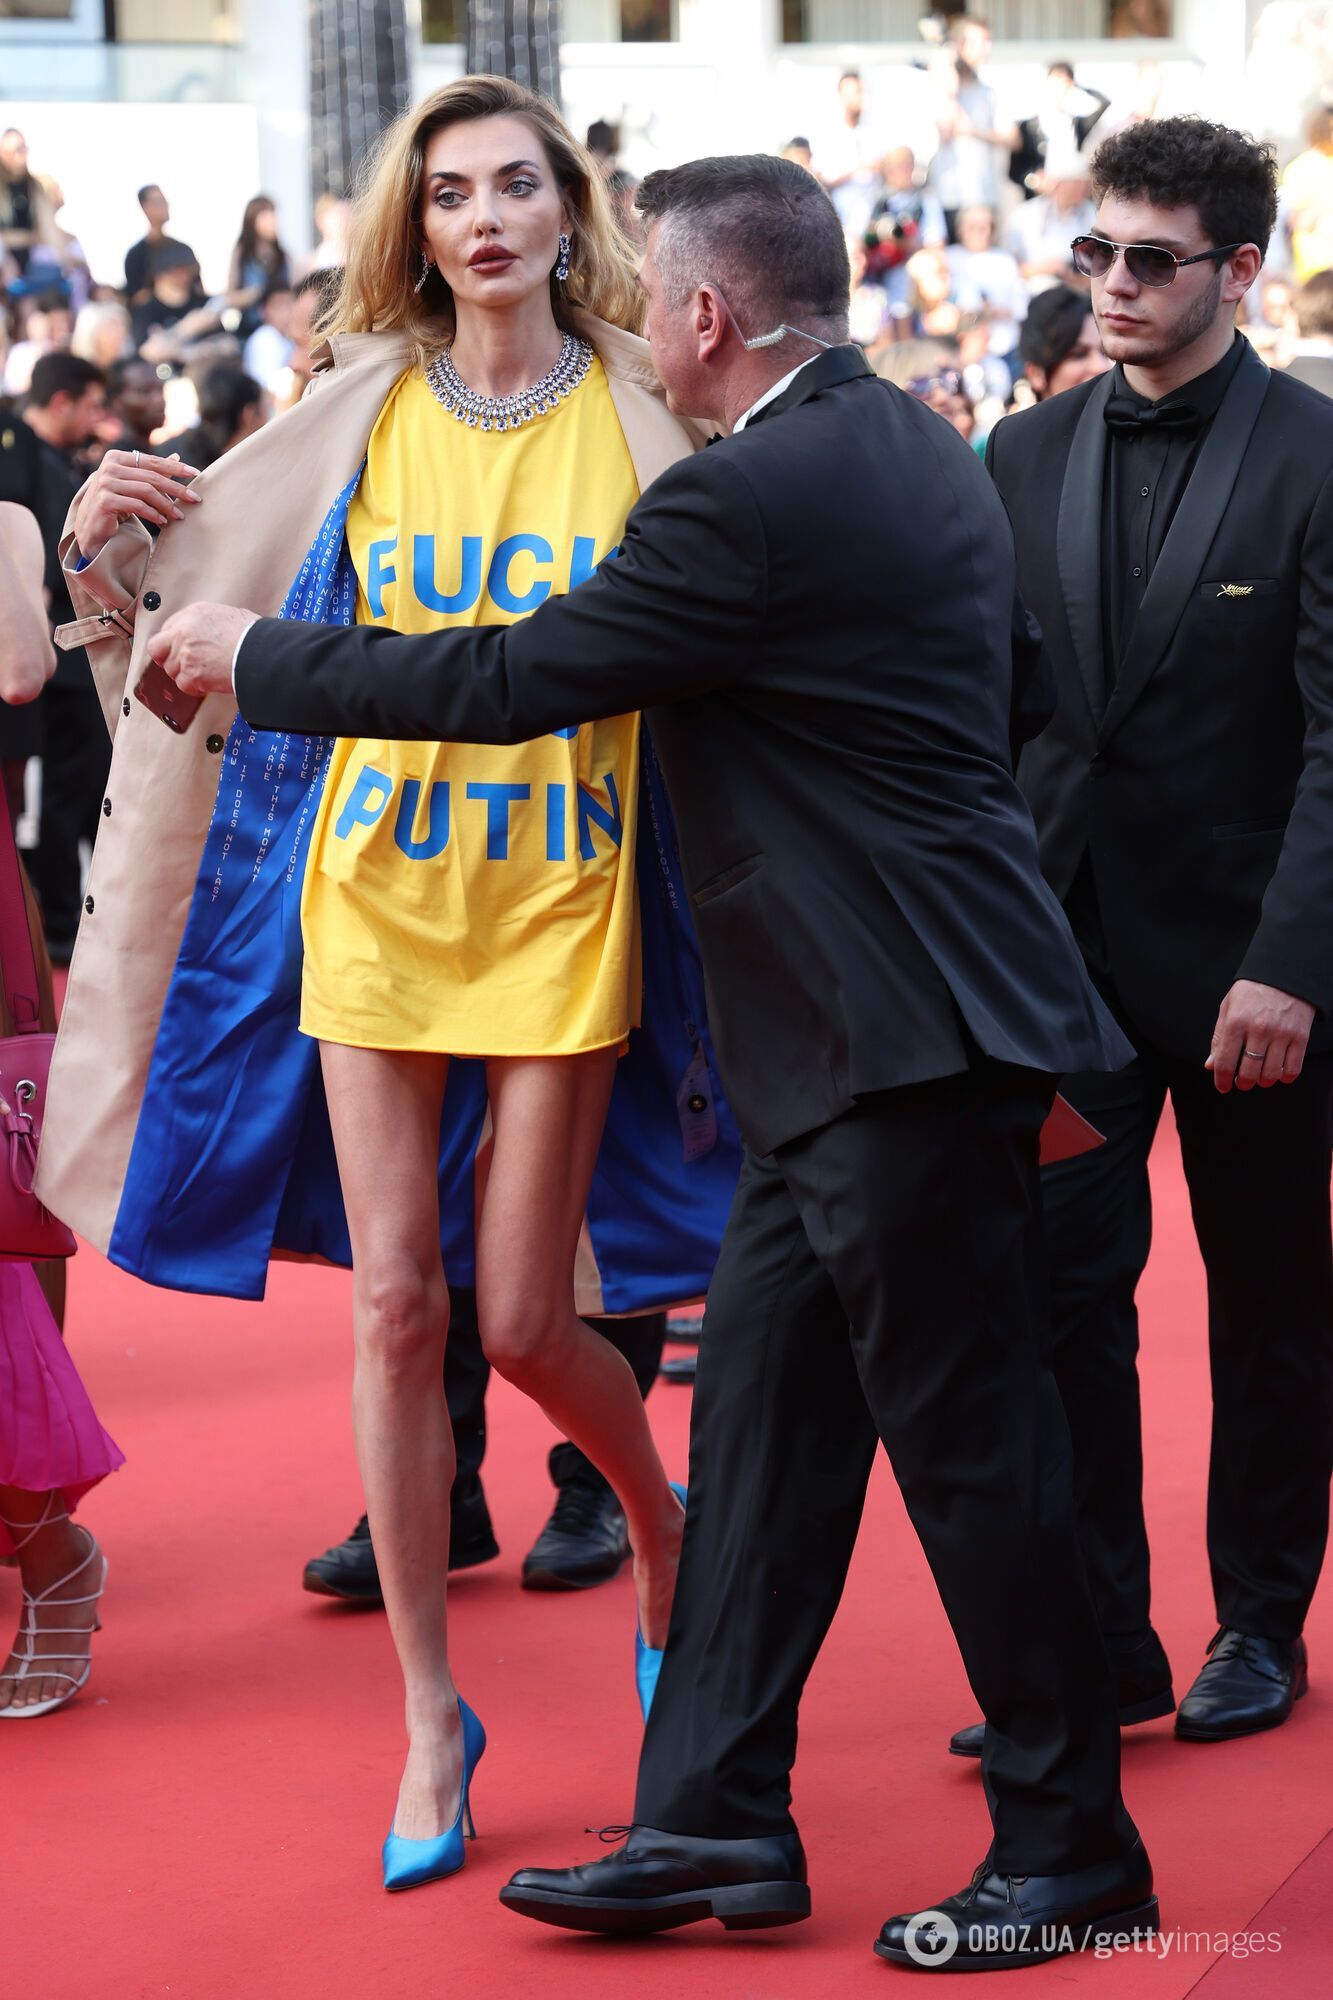 Супермодель Байкова пришла на Каннский кинофестиваль в футболке Fuck you Putin: ее окружили охранники. Фото и видео